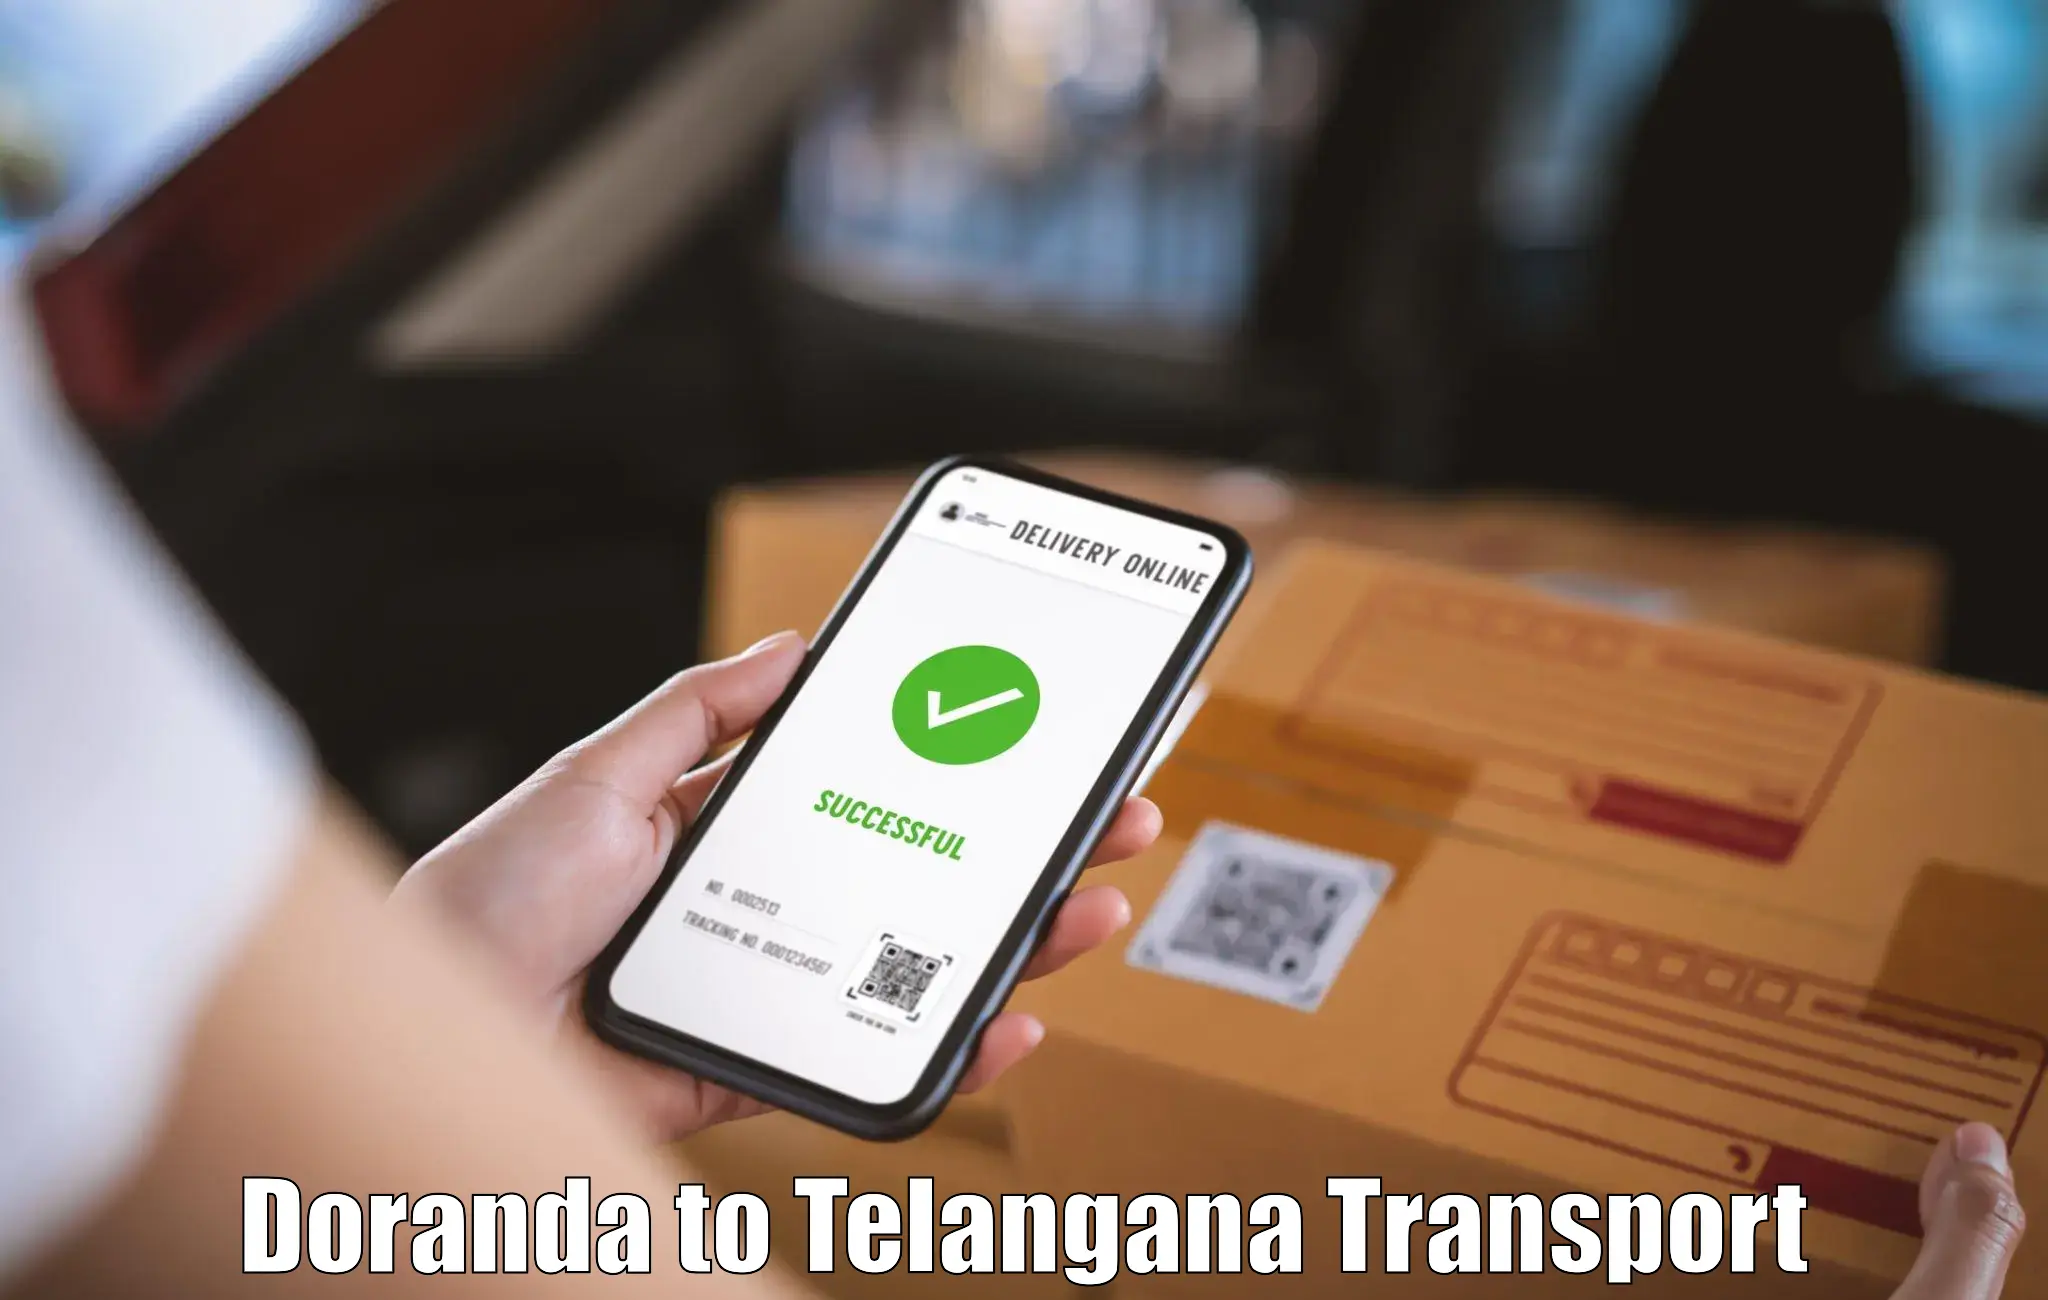 Transport in sharing Doranda to Marikal